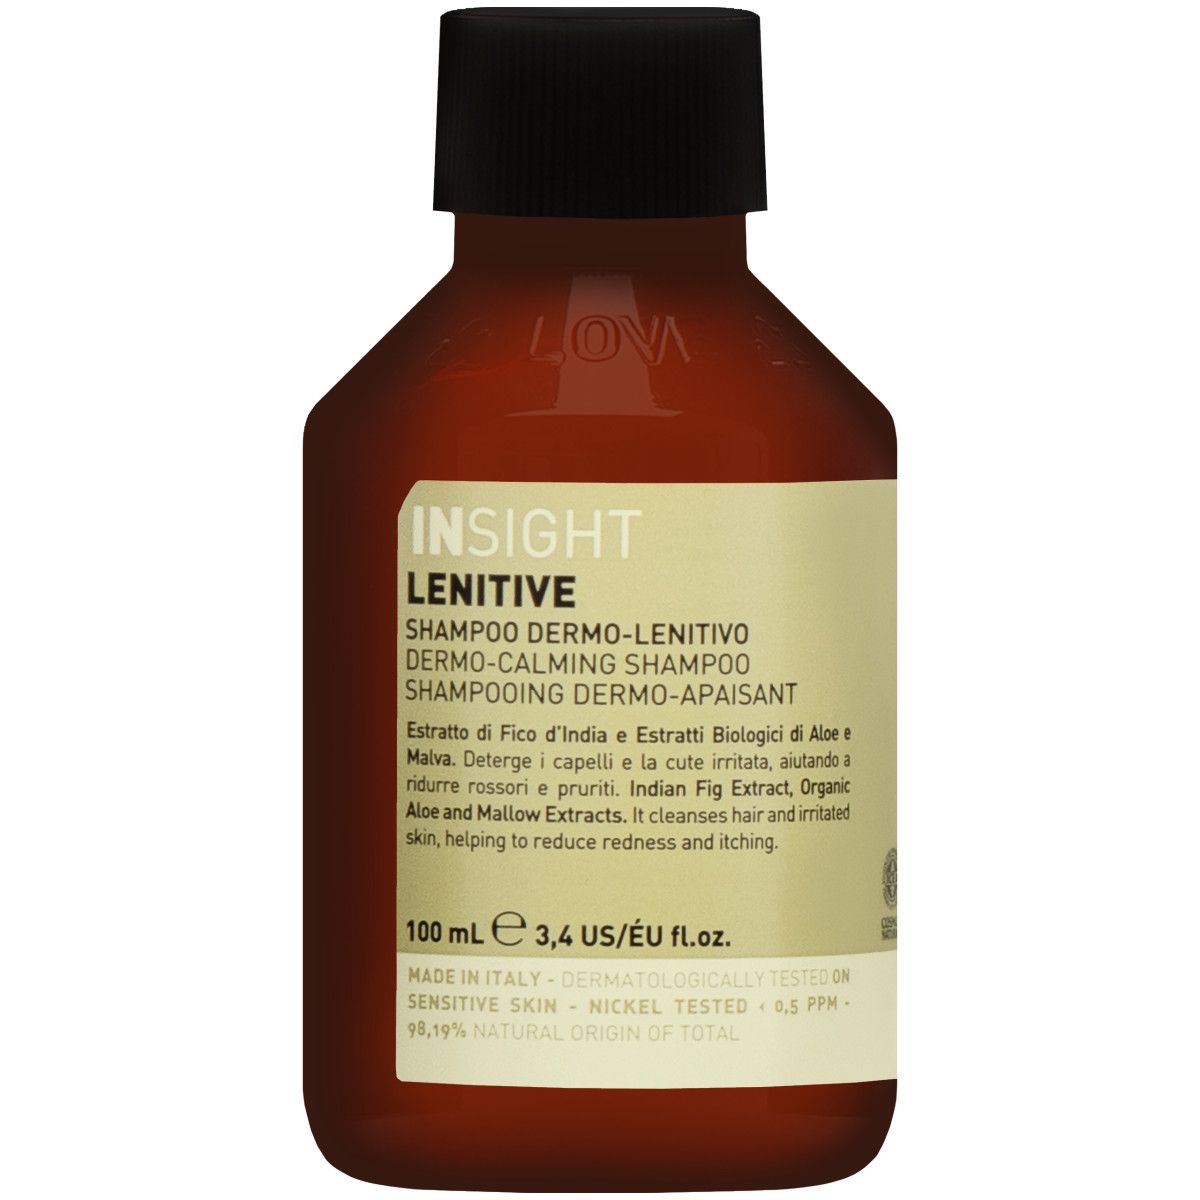 Insight Lenitive Szampon Kojący - szampon do wrażliwej skóry głowy, 100ml